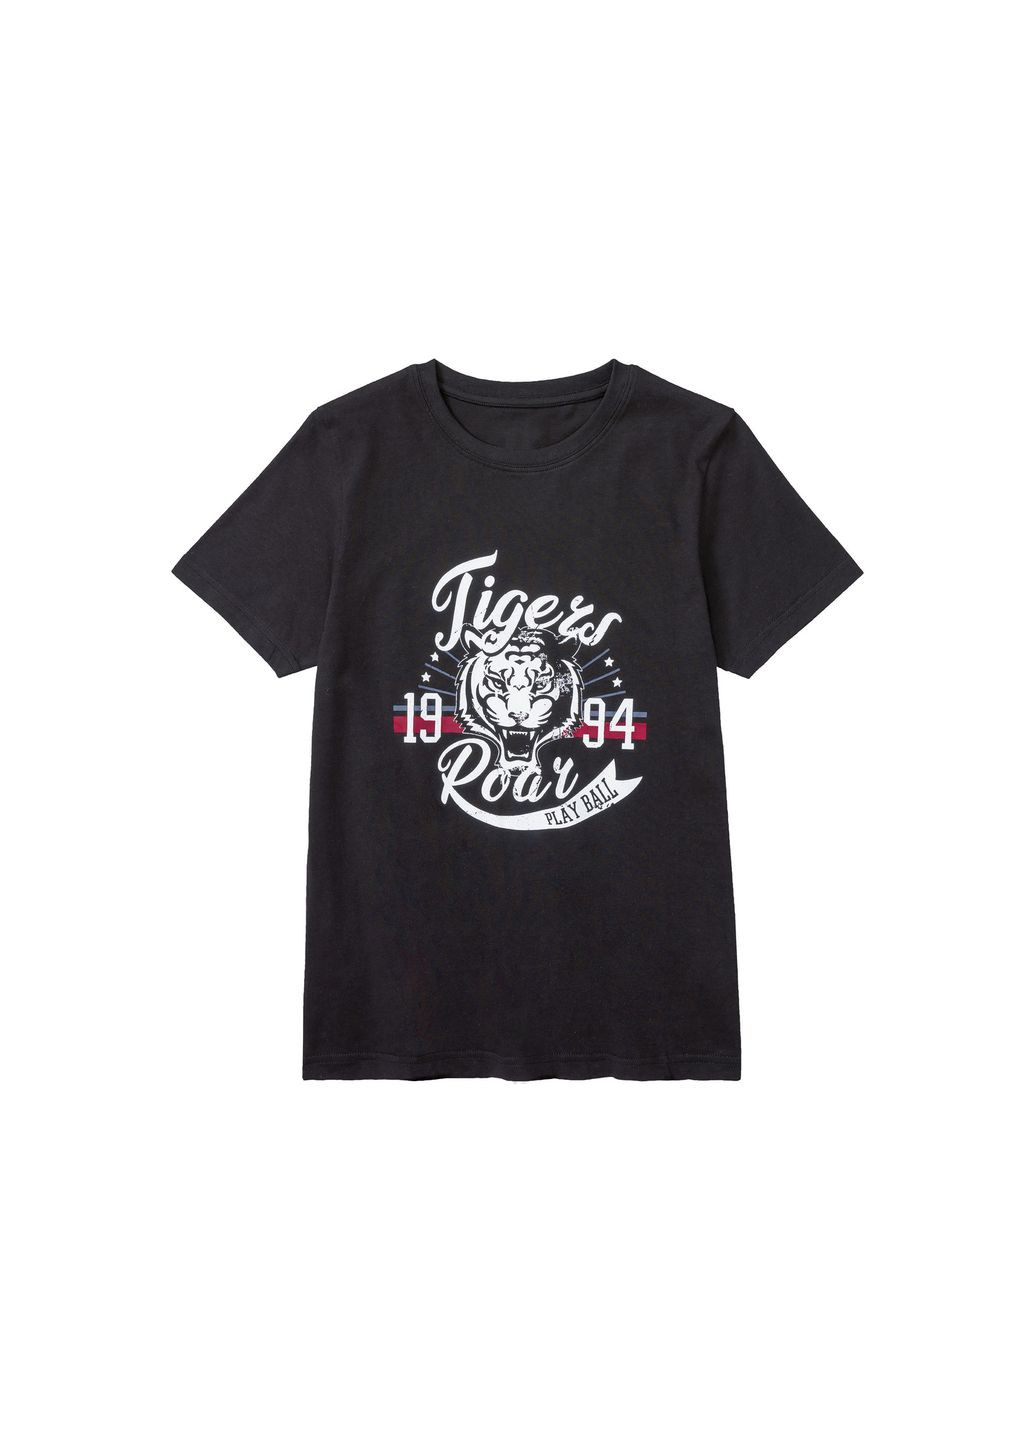 Черная демисезонная футболка хлопковая для мальчика 408589 Pepperts